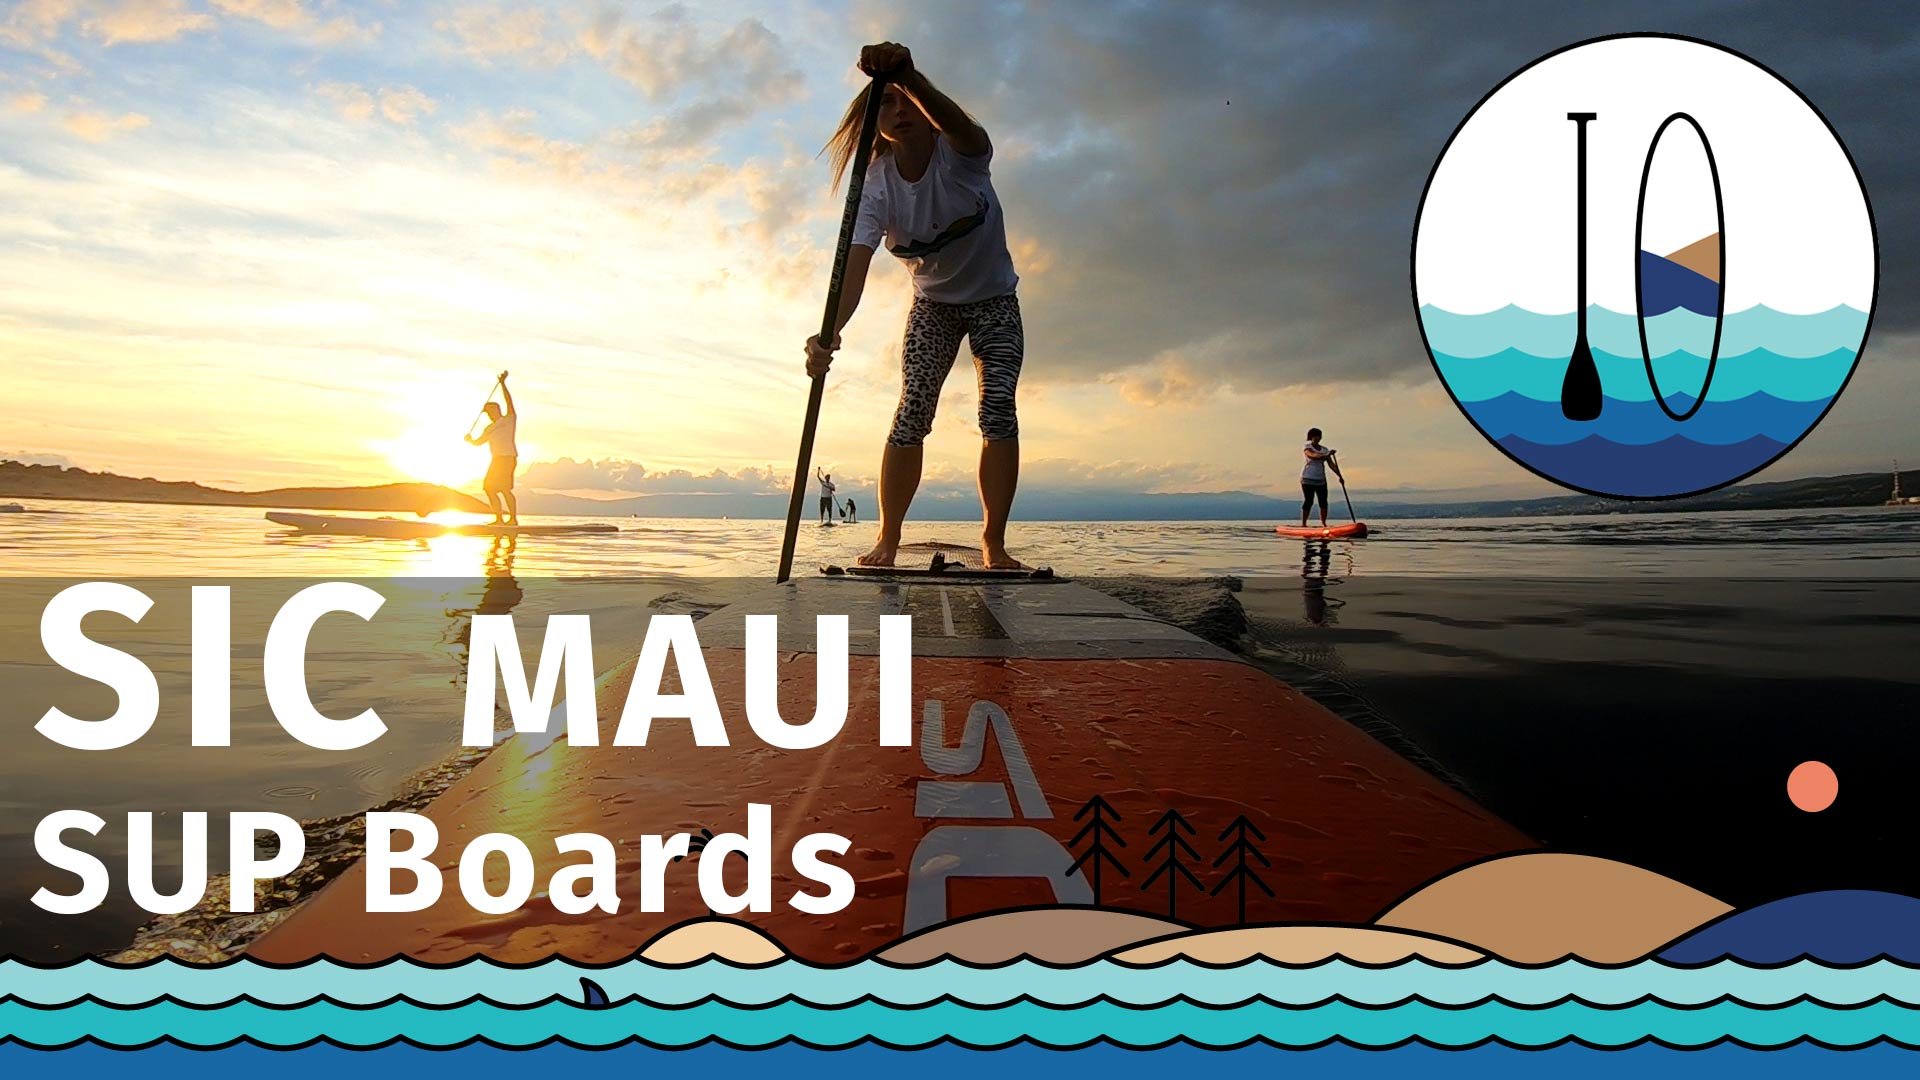 Wir stellen die neuen aufblasbaren SUP Boards von SIC MAUI 2021 vor